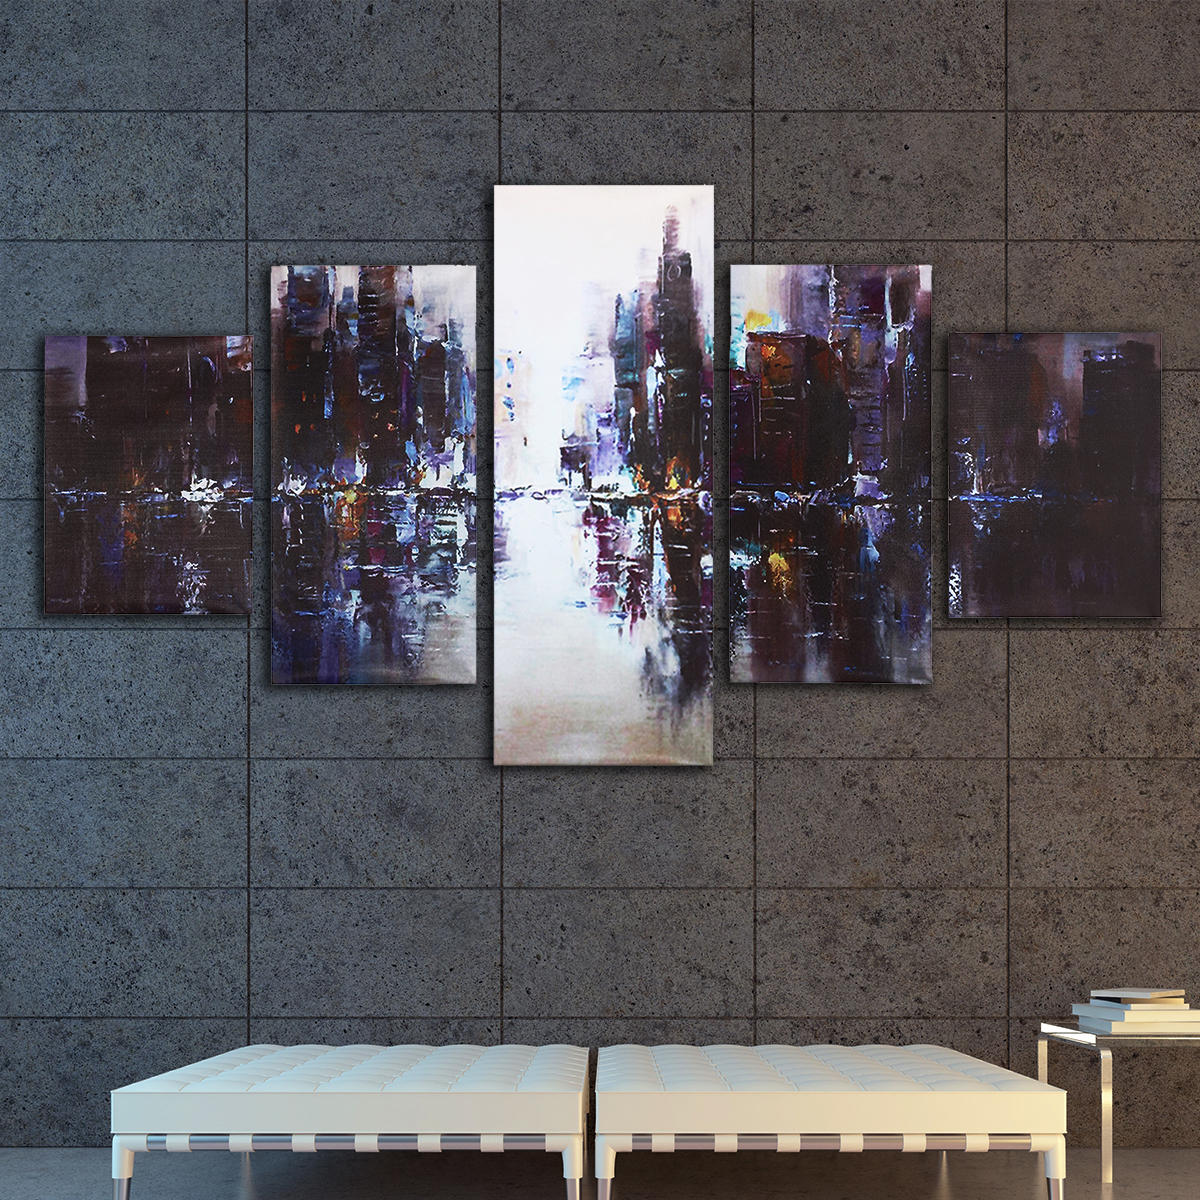 

5Pcs Аннотация Современный городской холст Печать картин Картинка Home Wall Decor Unframed